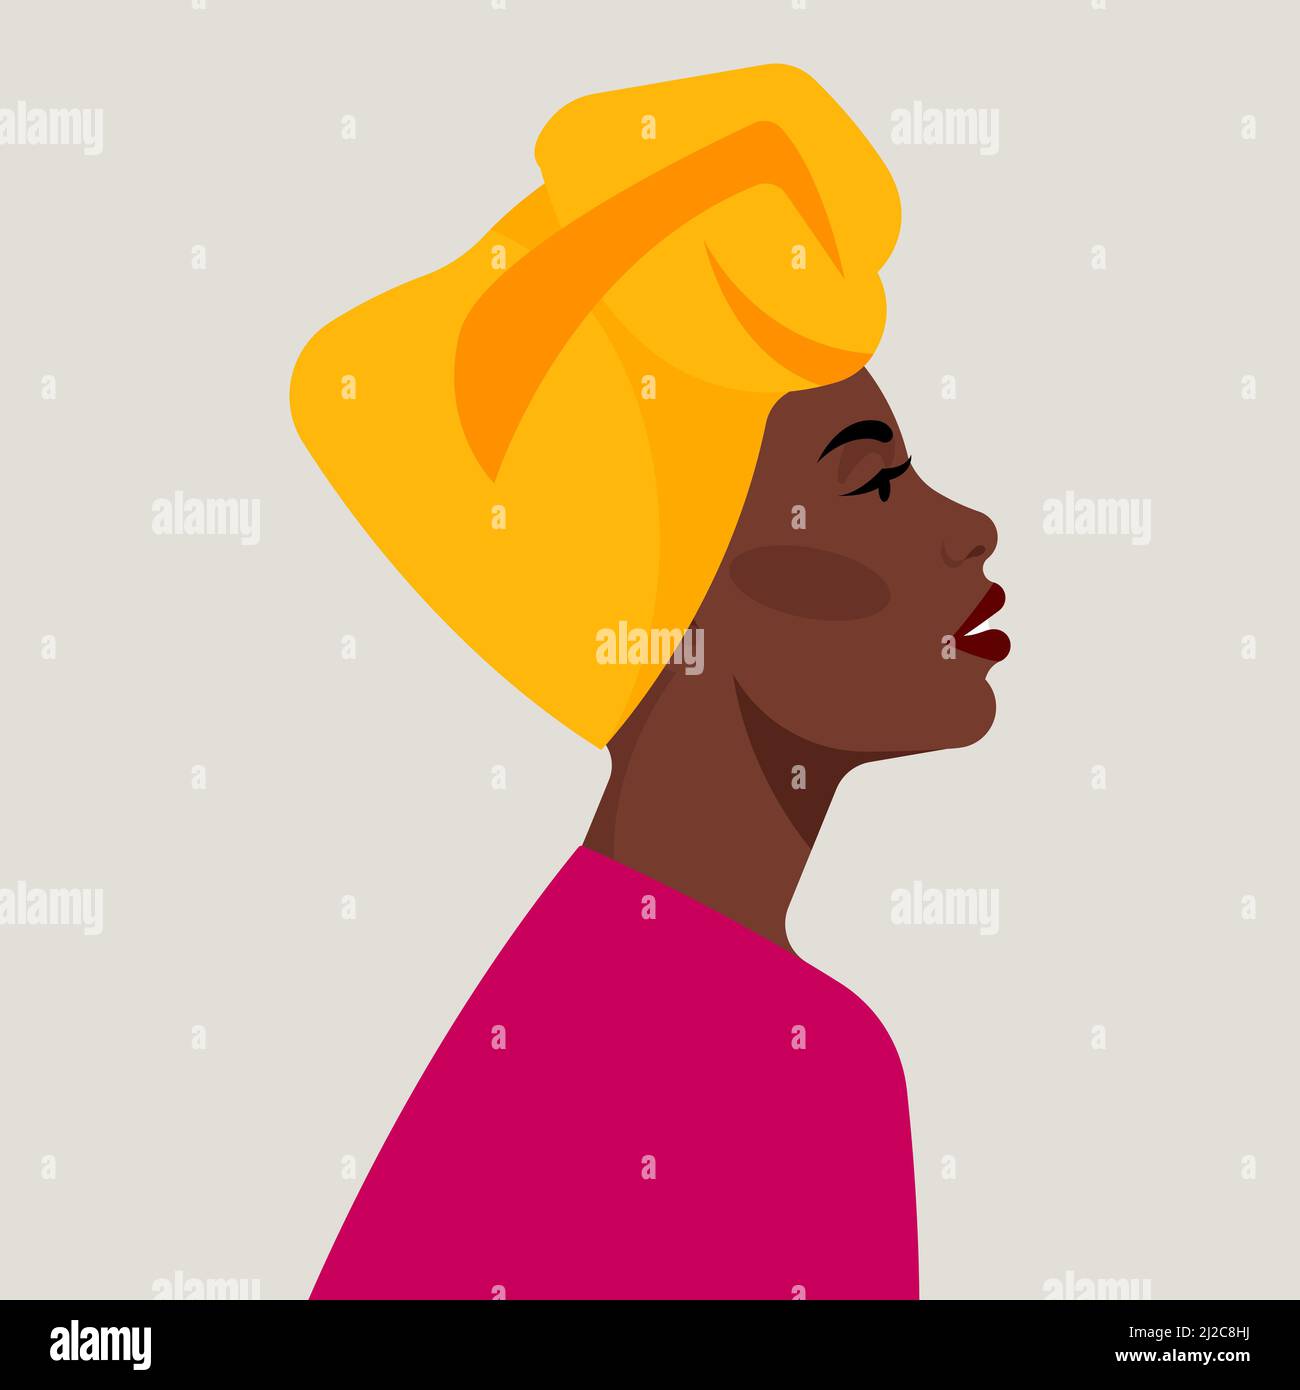 Portrait d'une femme noire dans un haut turban africain. Turban jaune enveloppé sur la tête. Portrait féminin, tête et épaules, vue latérale. Moderne et moderne Illustration de Vecteur